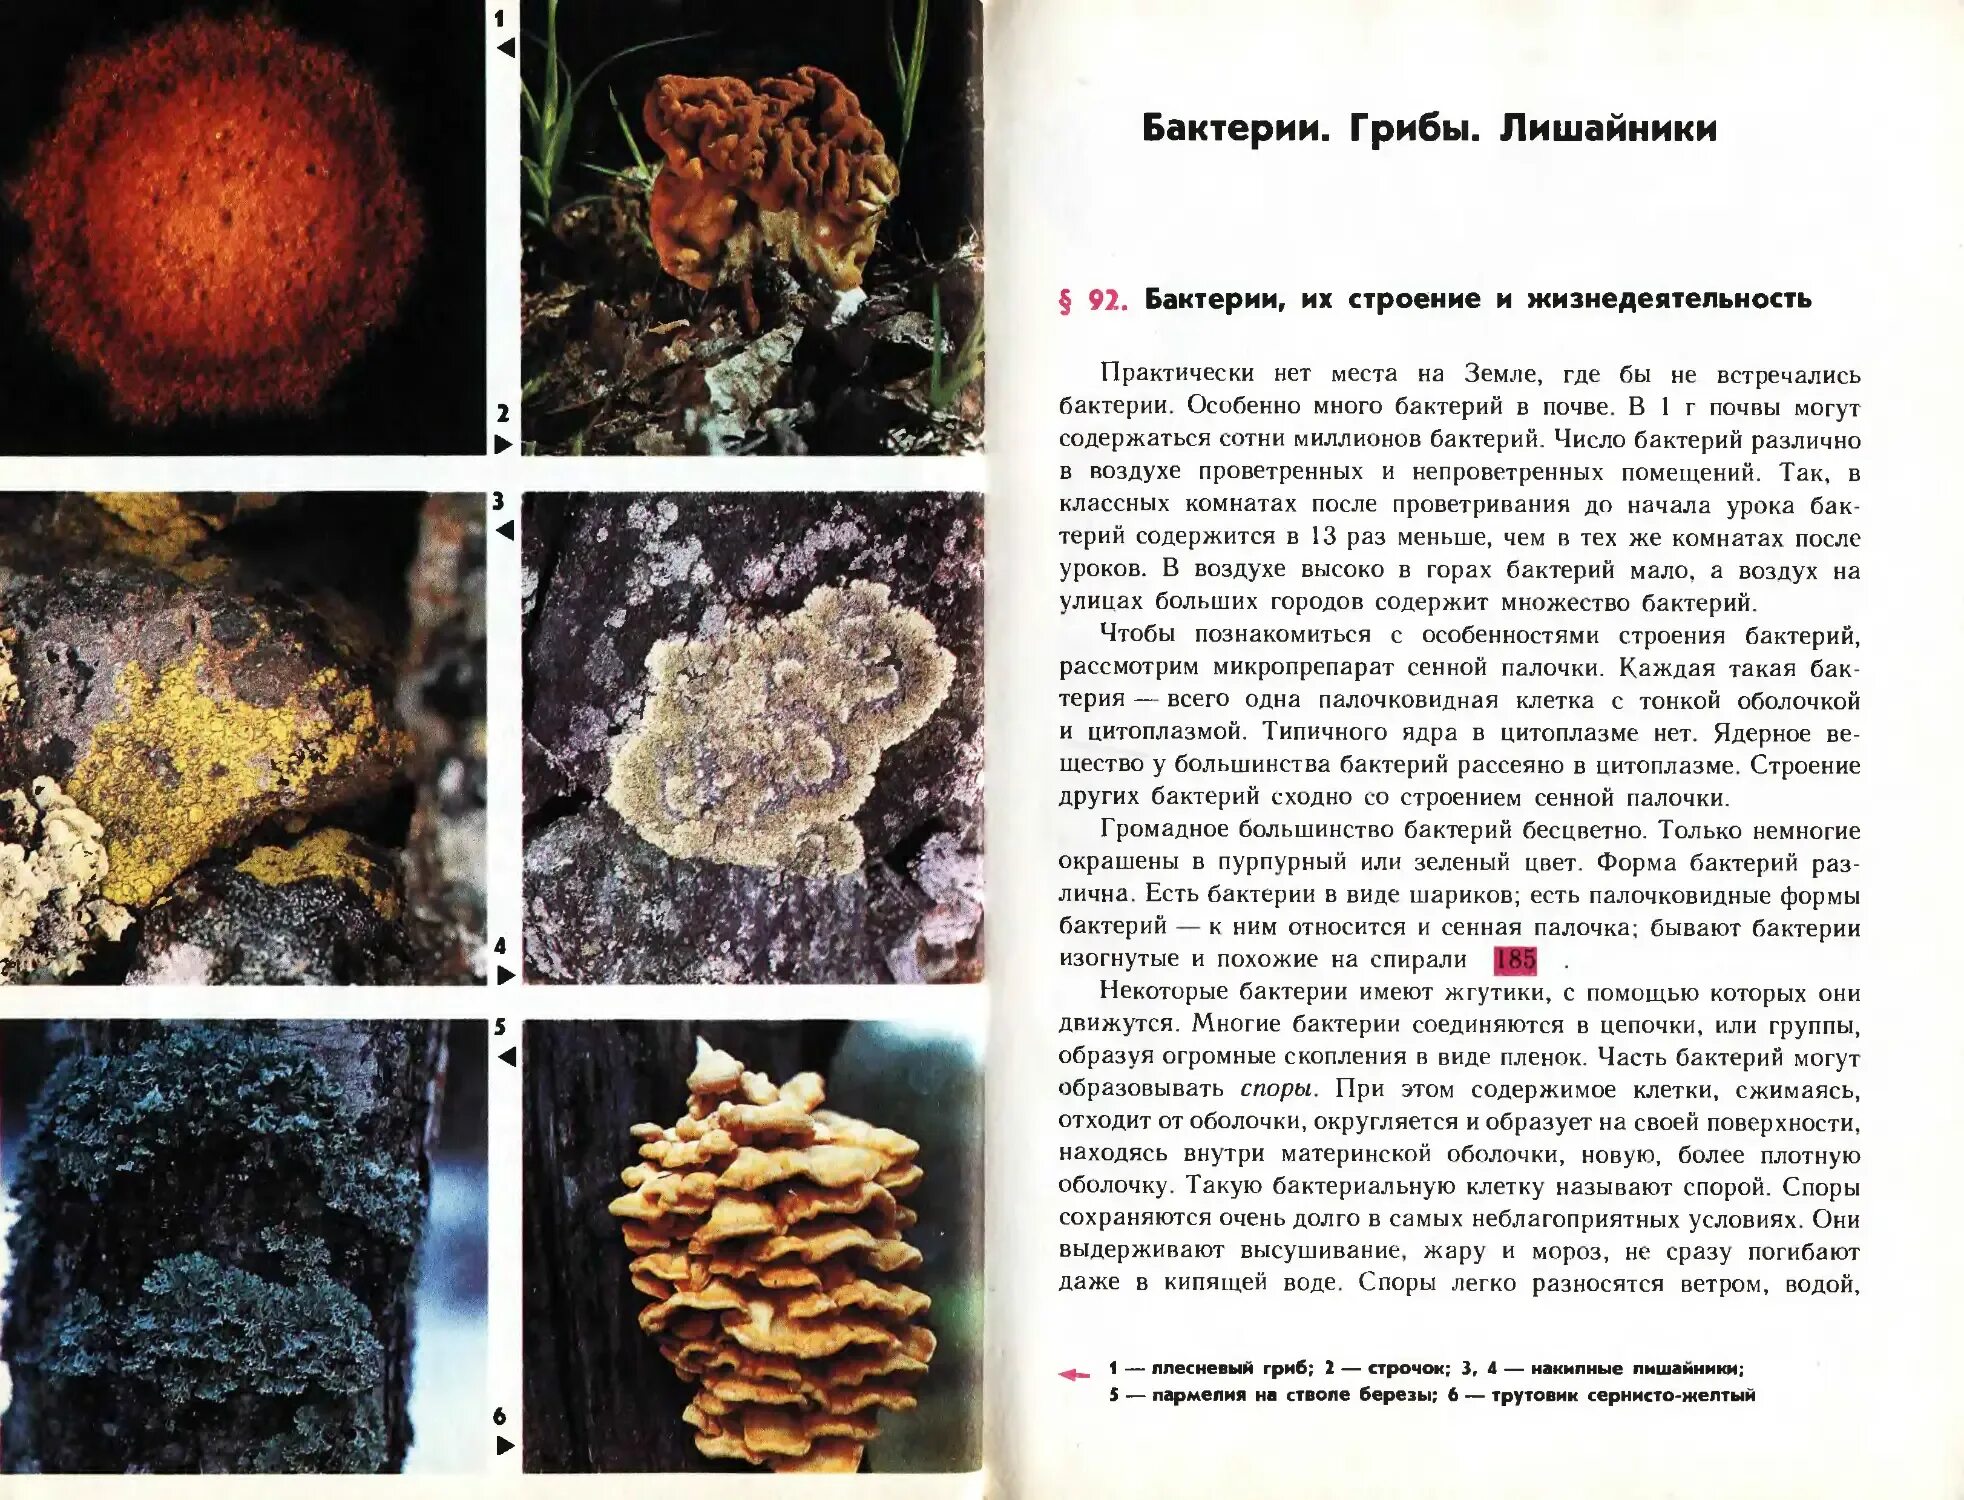 Бактерии грибы лишайники. Грибы и бактерии. Бактерии грибы лишайники таблица. Бактерии грибы лишайники сравнительная таблица. Грибы по сравнению с бактериями имеют